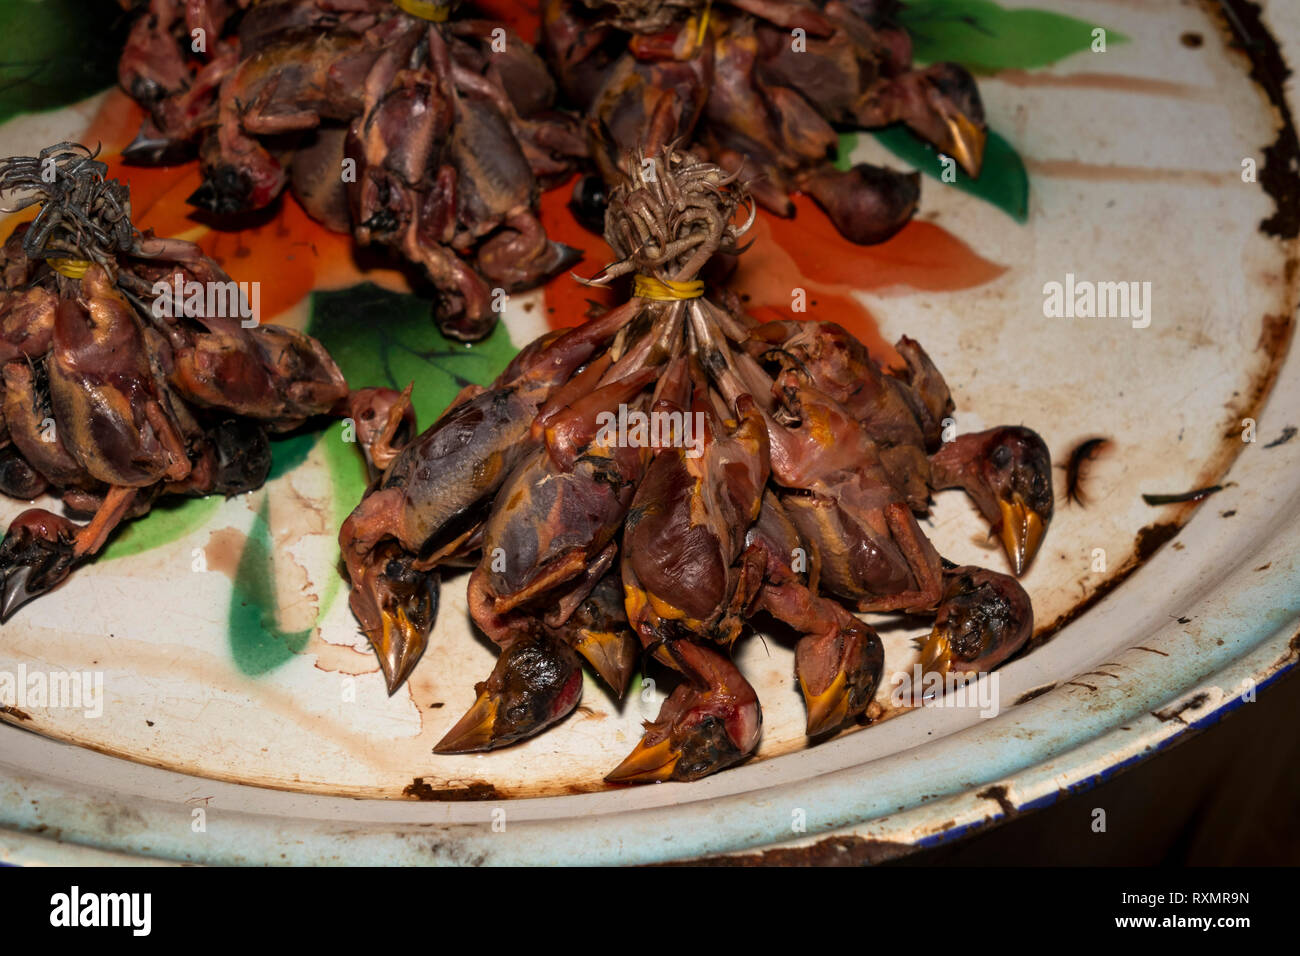 Kambodscha, Phnom Penh, Oudong, Lebensmittelmarkt, Bush Fleisch, bündelt der gekochten kleine Vögel zum Verkauf zu essen Stockfoto